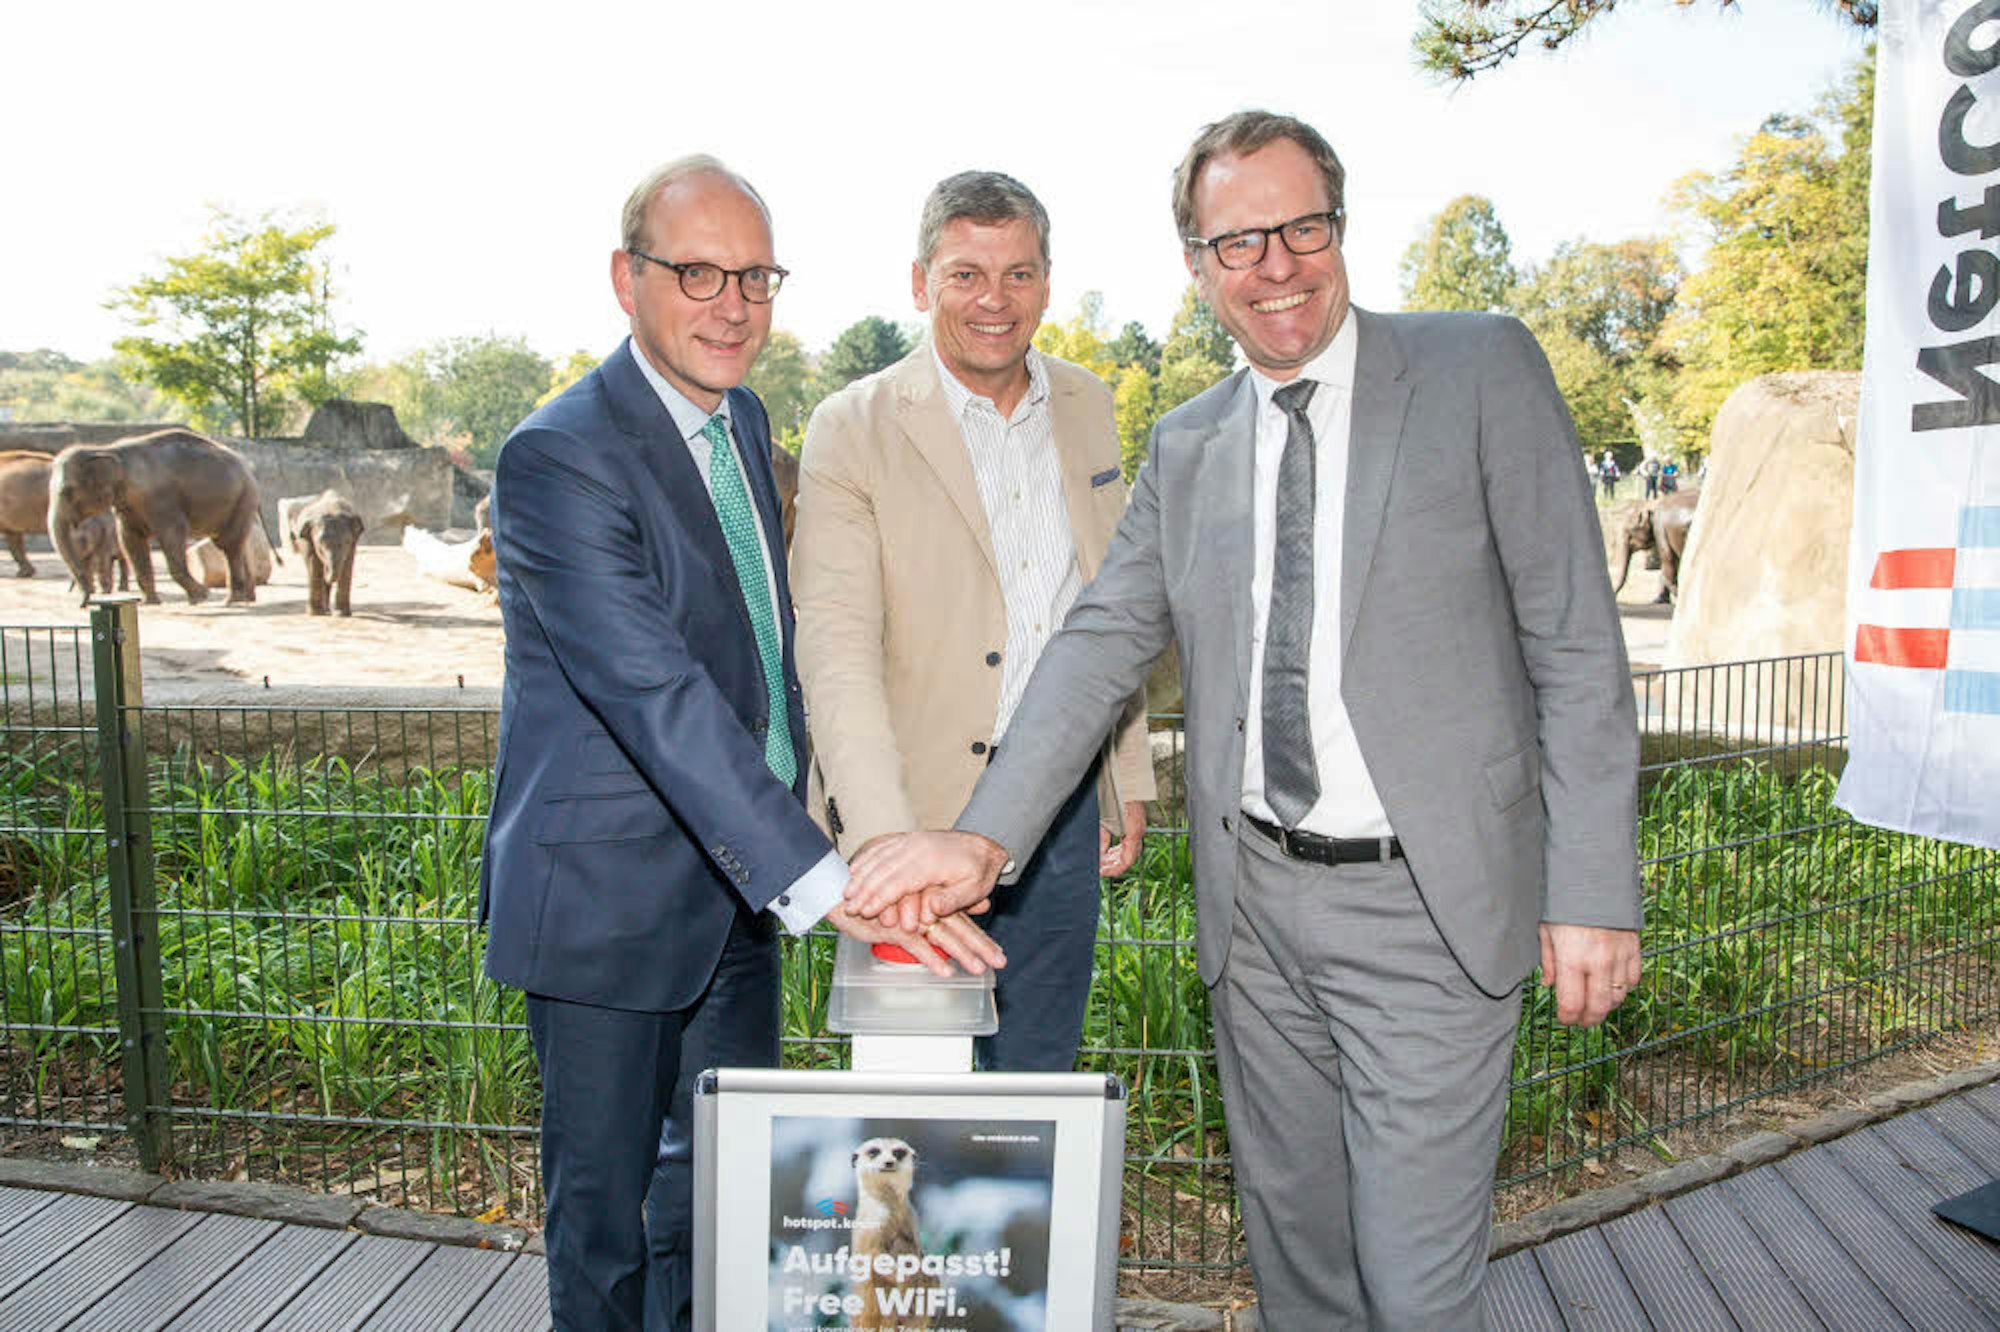 Symbolischer Knopfdruck: Netcologne-Geschäftsführer Timo von Lepel (v.l.), Zoochef Christopher Landsberg und Stadtdirektor Stephan Keller starteten das Wlan im Kölner Zoo.